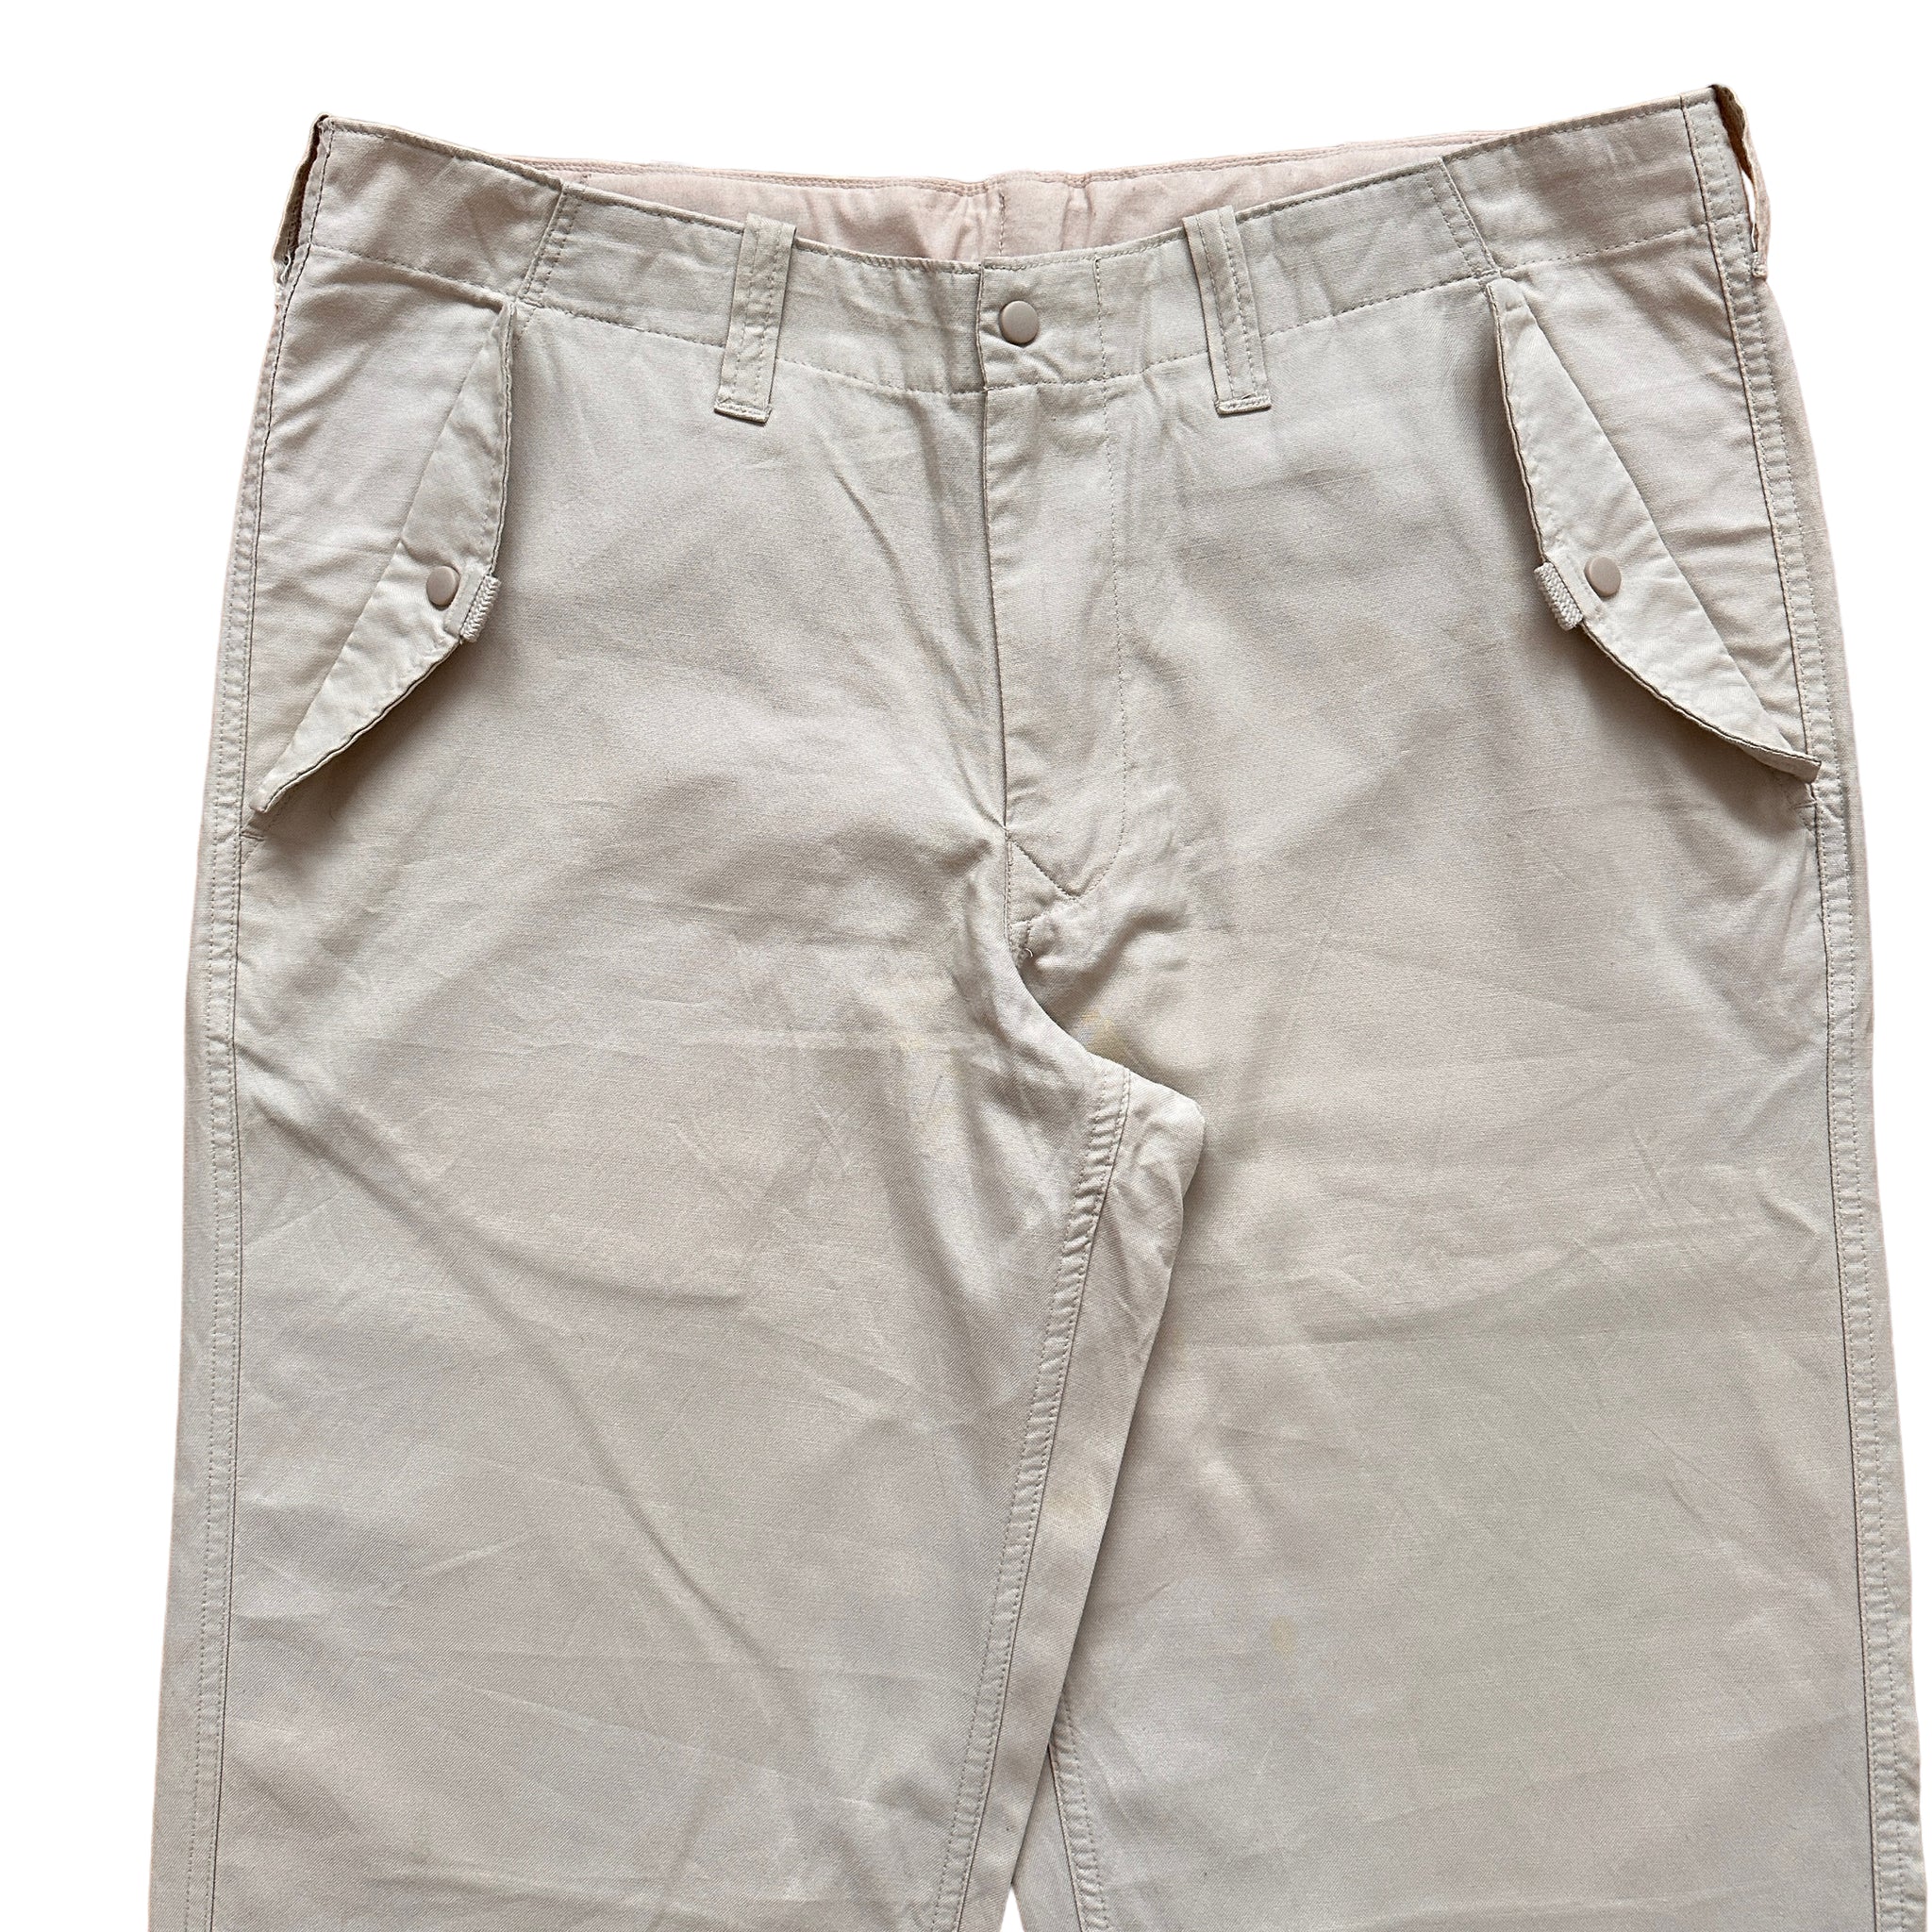 2001 Gap cotton technical pants 32-34 adjustable